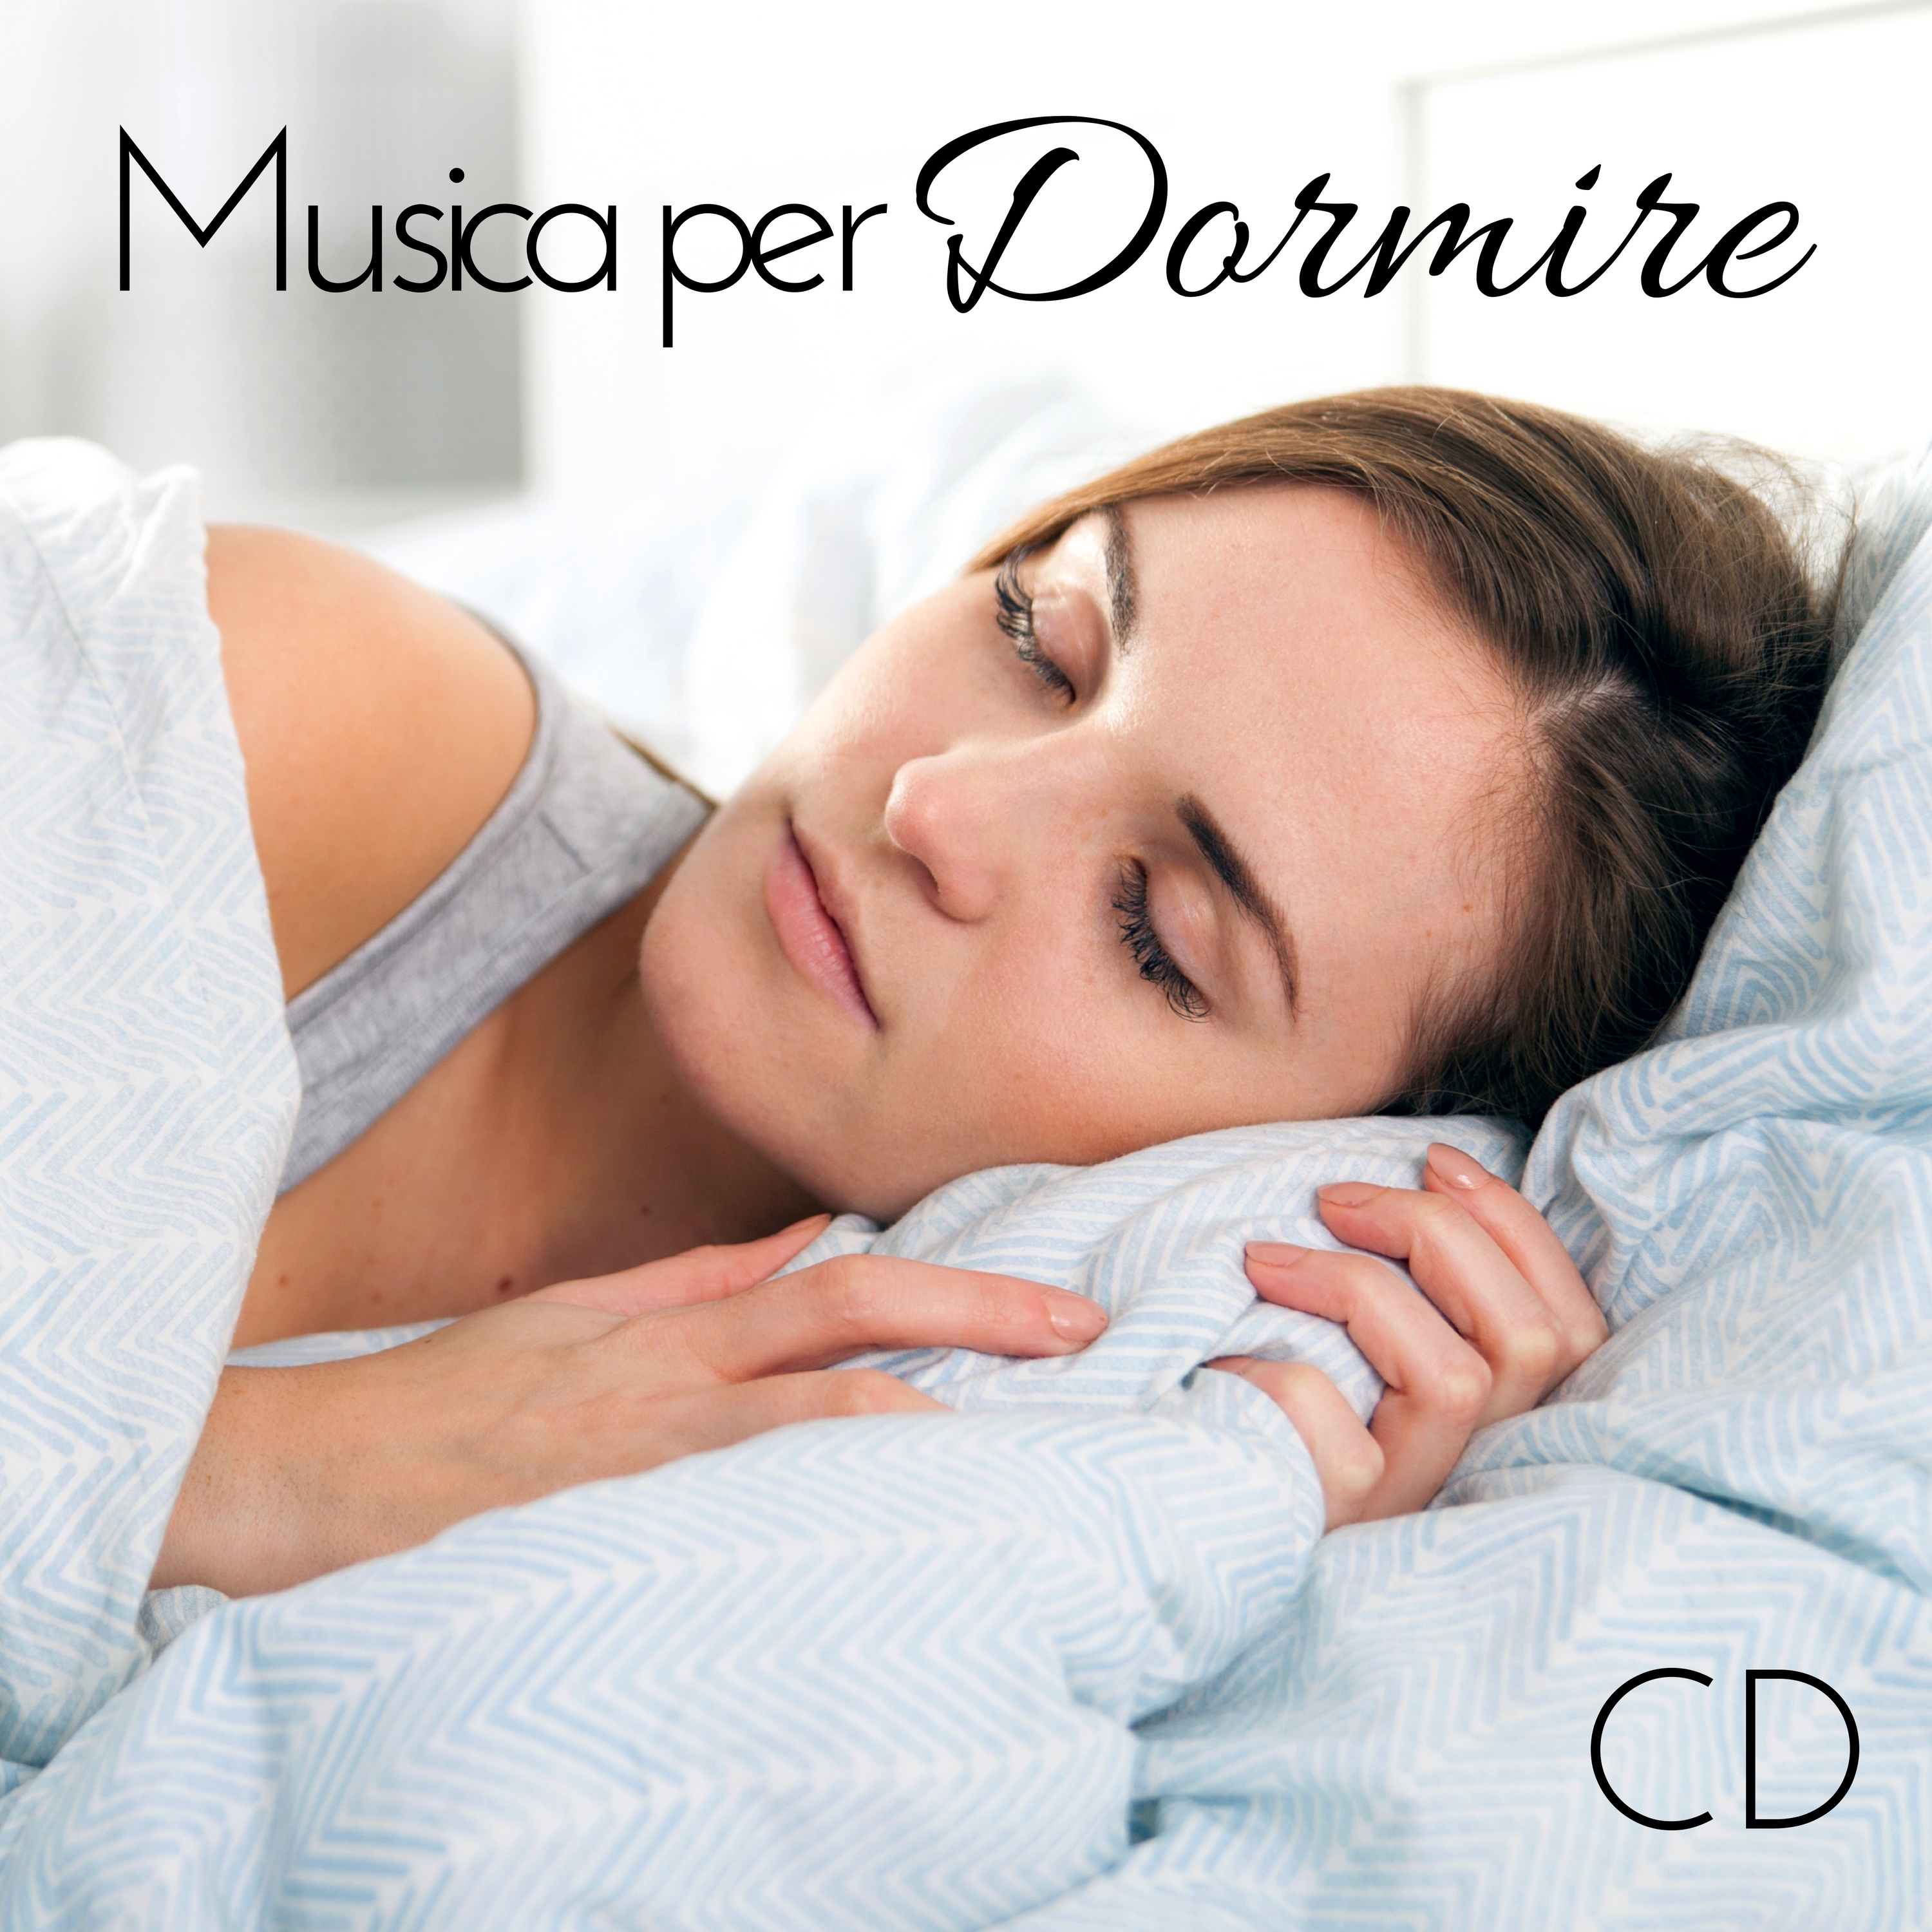 Musica per Dormire CD: Musica Rilassante di Piano, Musica Classica, Musica per Danza Classica